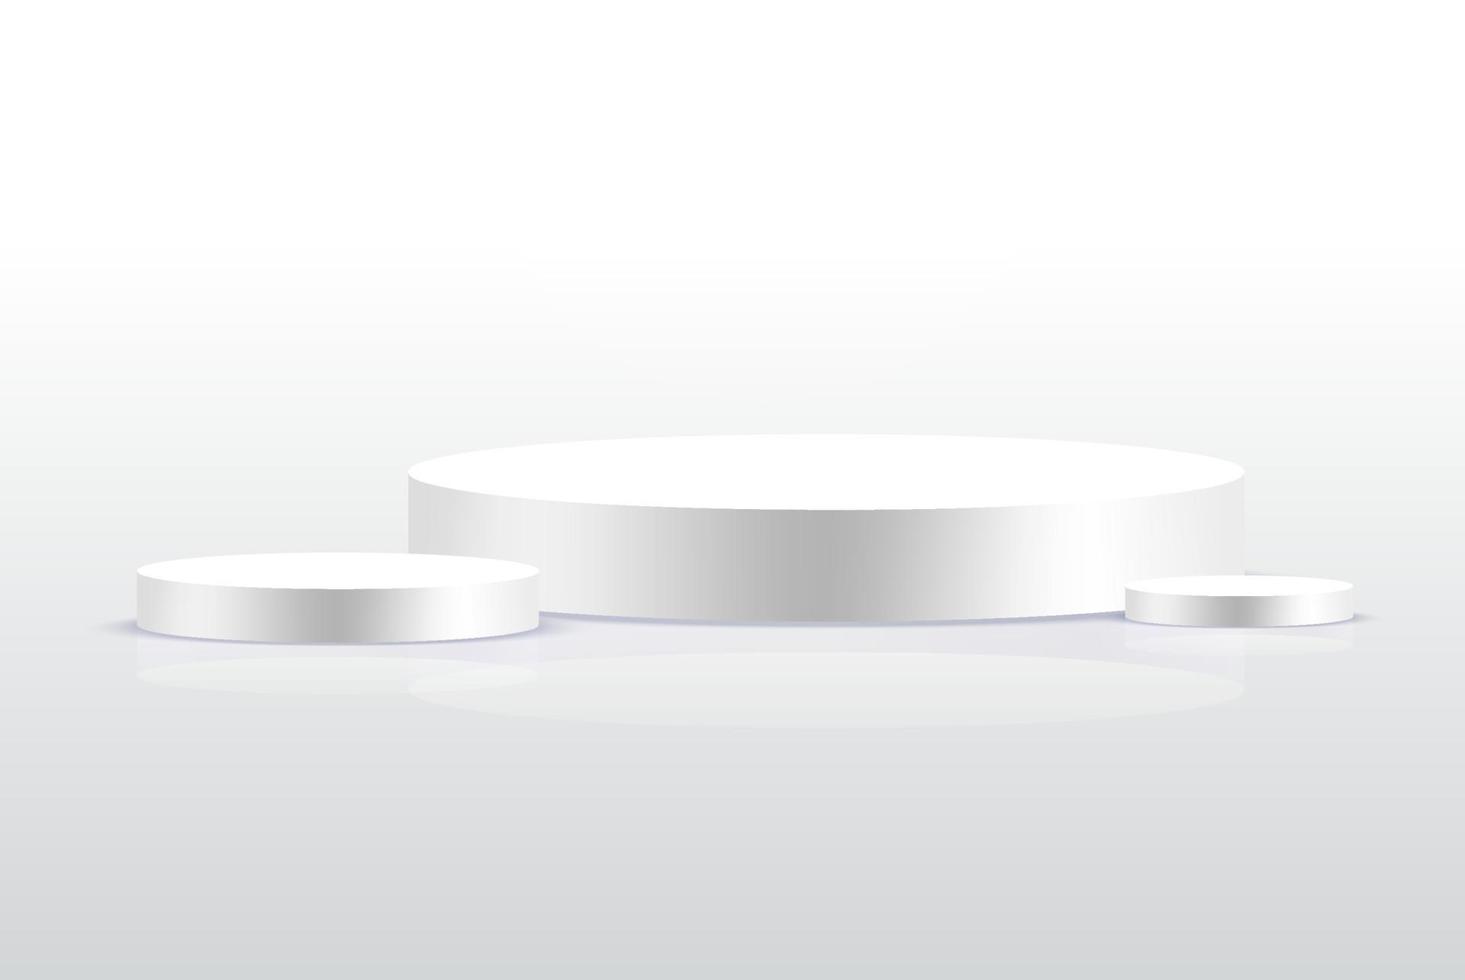 hintergrund vektor 3d grau render mit podium weiß 3d und minimale weiße wandszene, minimale podium weiß hintergrund 3d-rendering abstrakte bühne grau. Bühnenbild für Produkt auf weißem Podiumsstudio